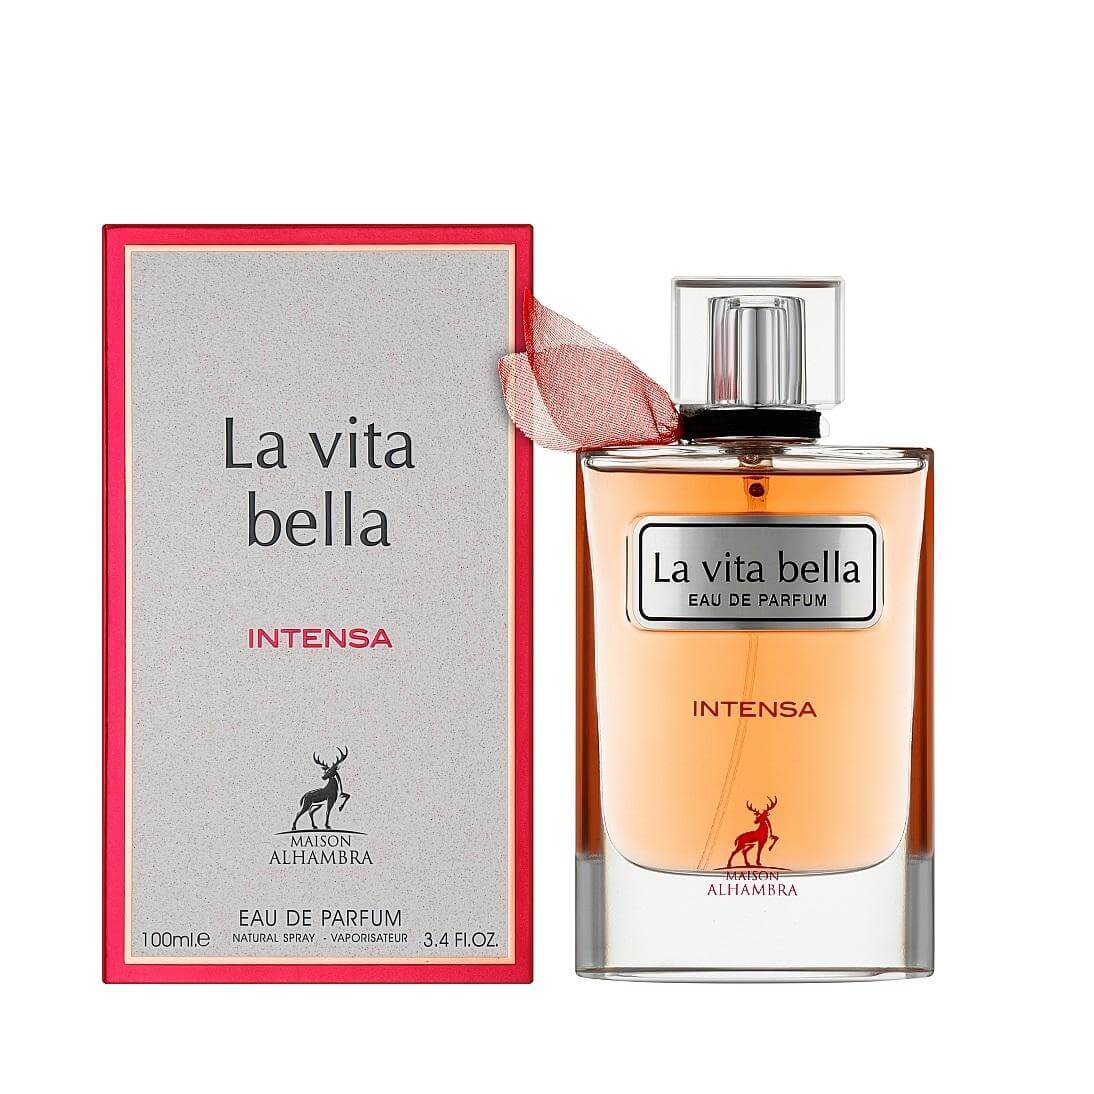 La Vita Bella Intensa Perfume / Eau De Parfum By Maison Alhambra / Lattafa (Inspired By Lancôme La Vie Est Belle Intensément)